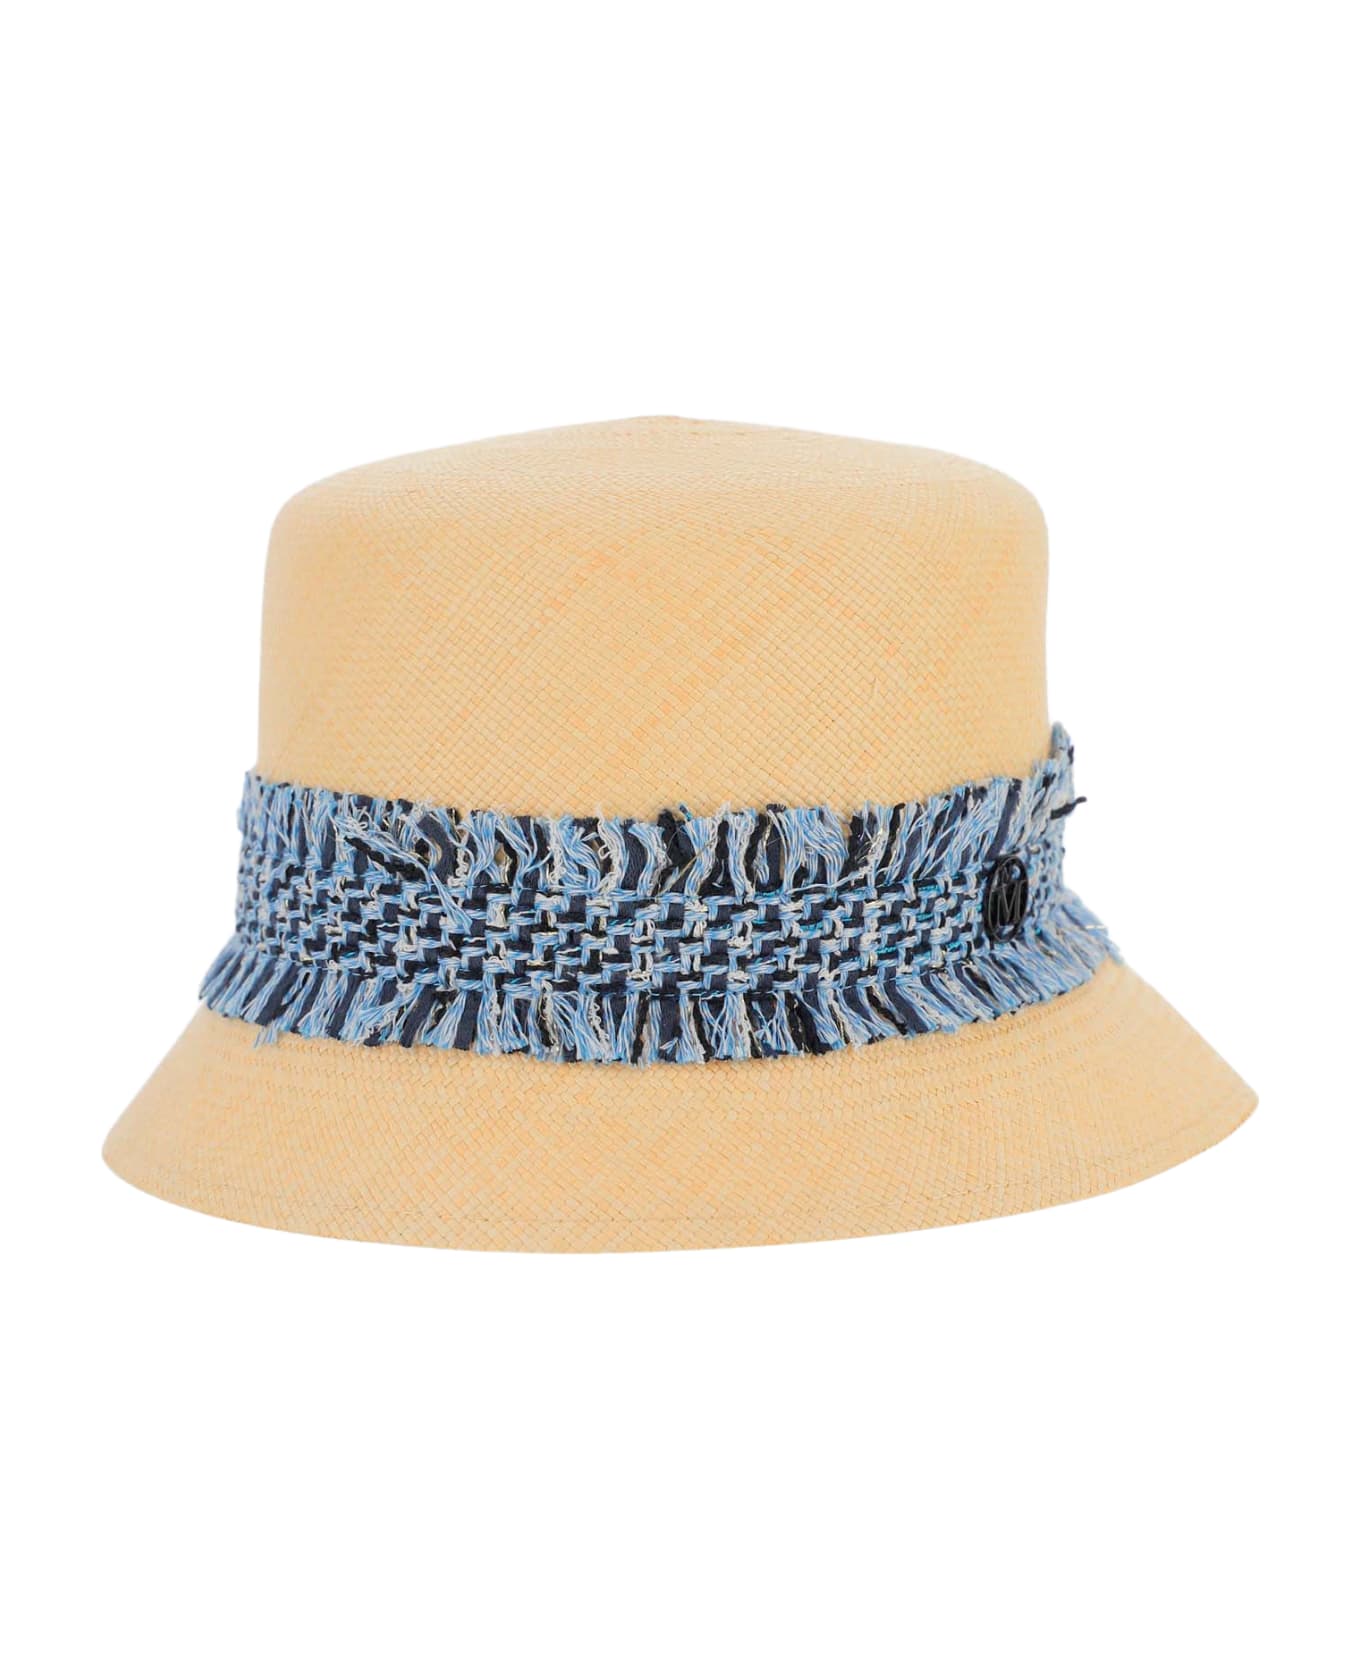 Maison Michel Mini New Kendall Hat - Beige 帽子